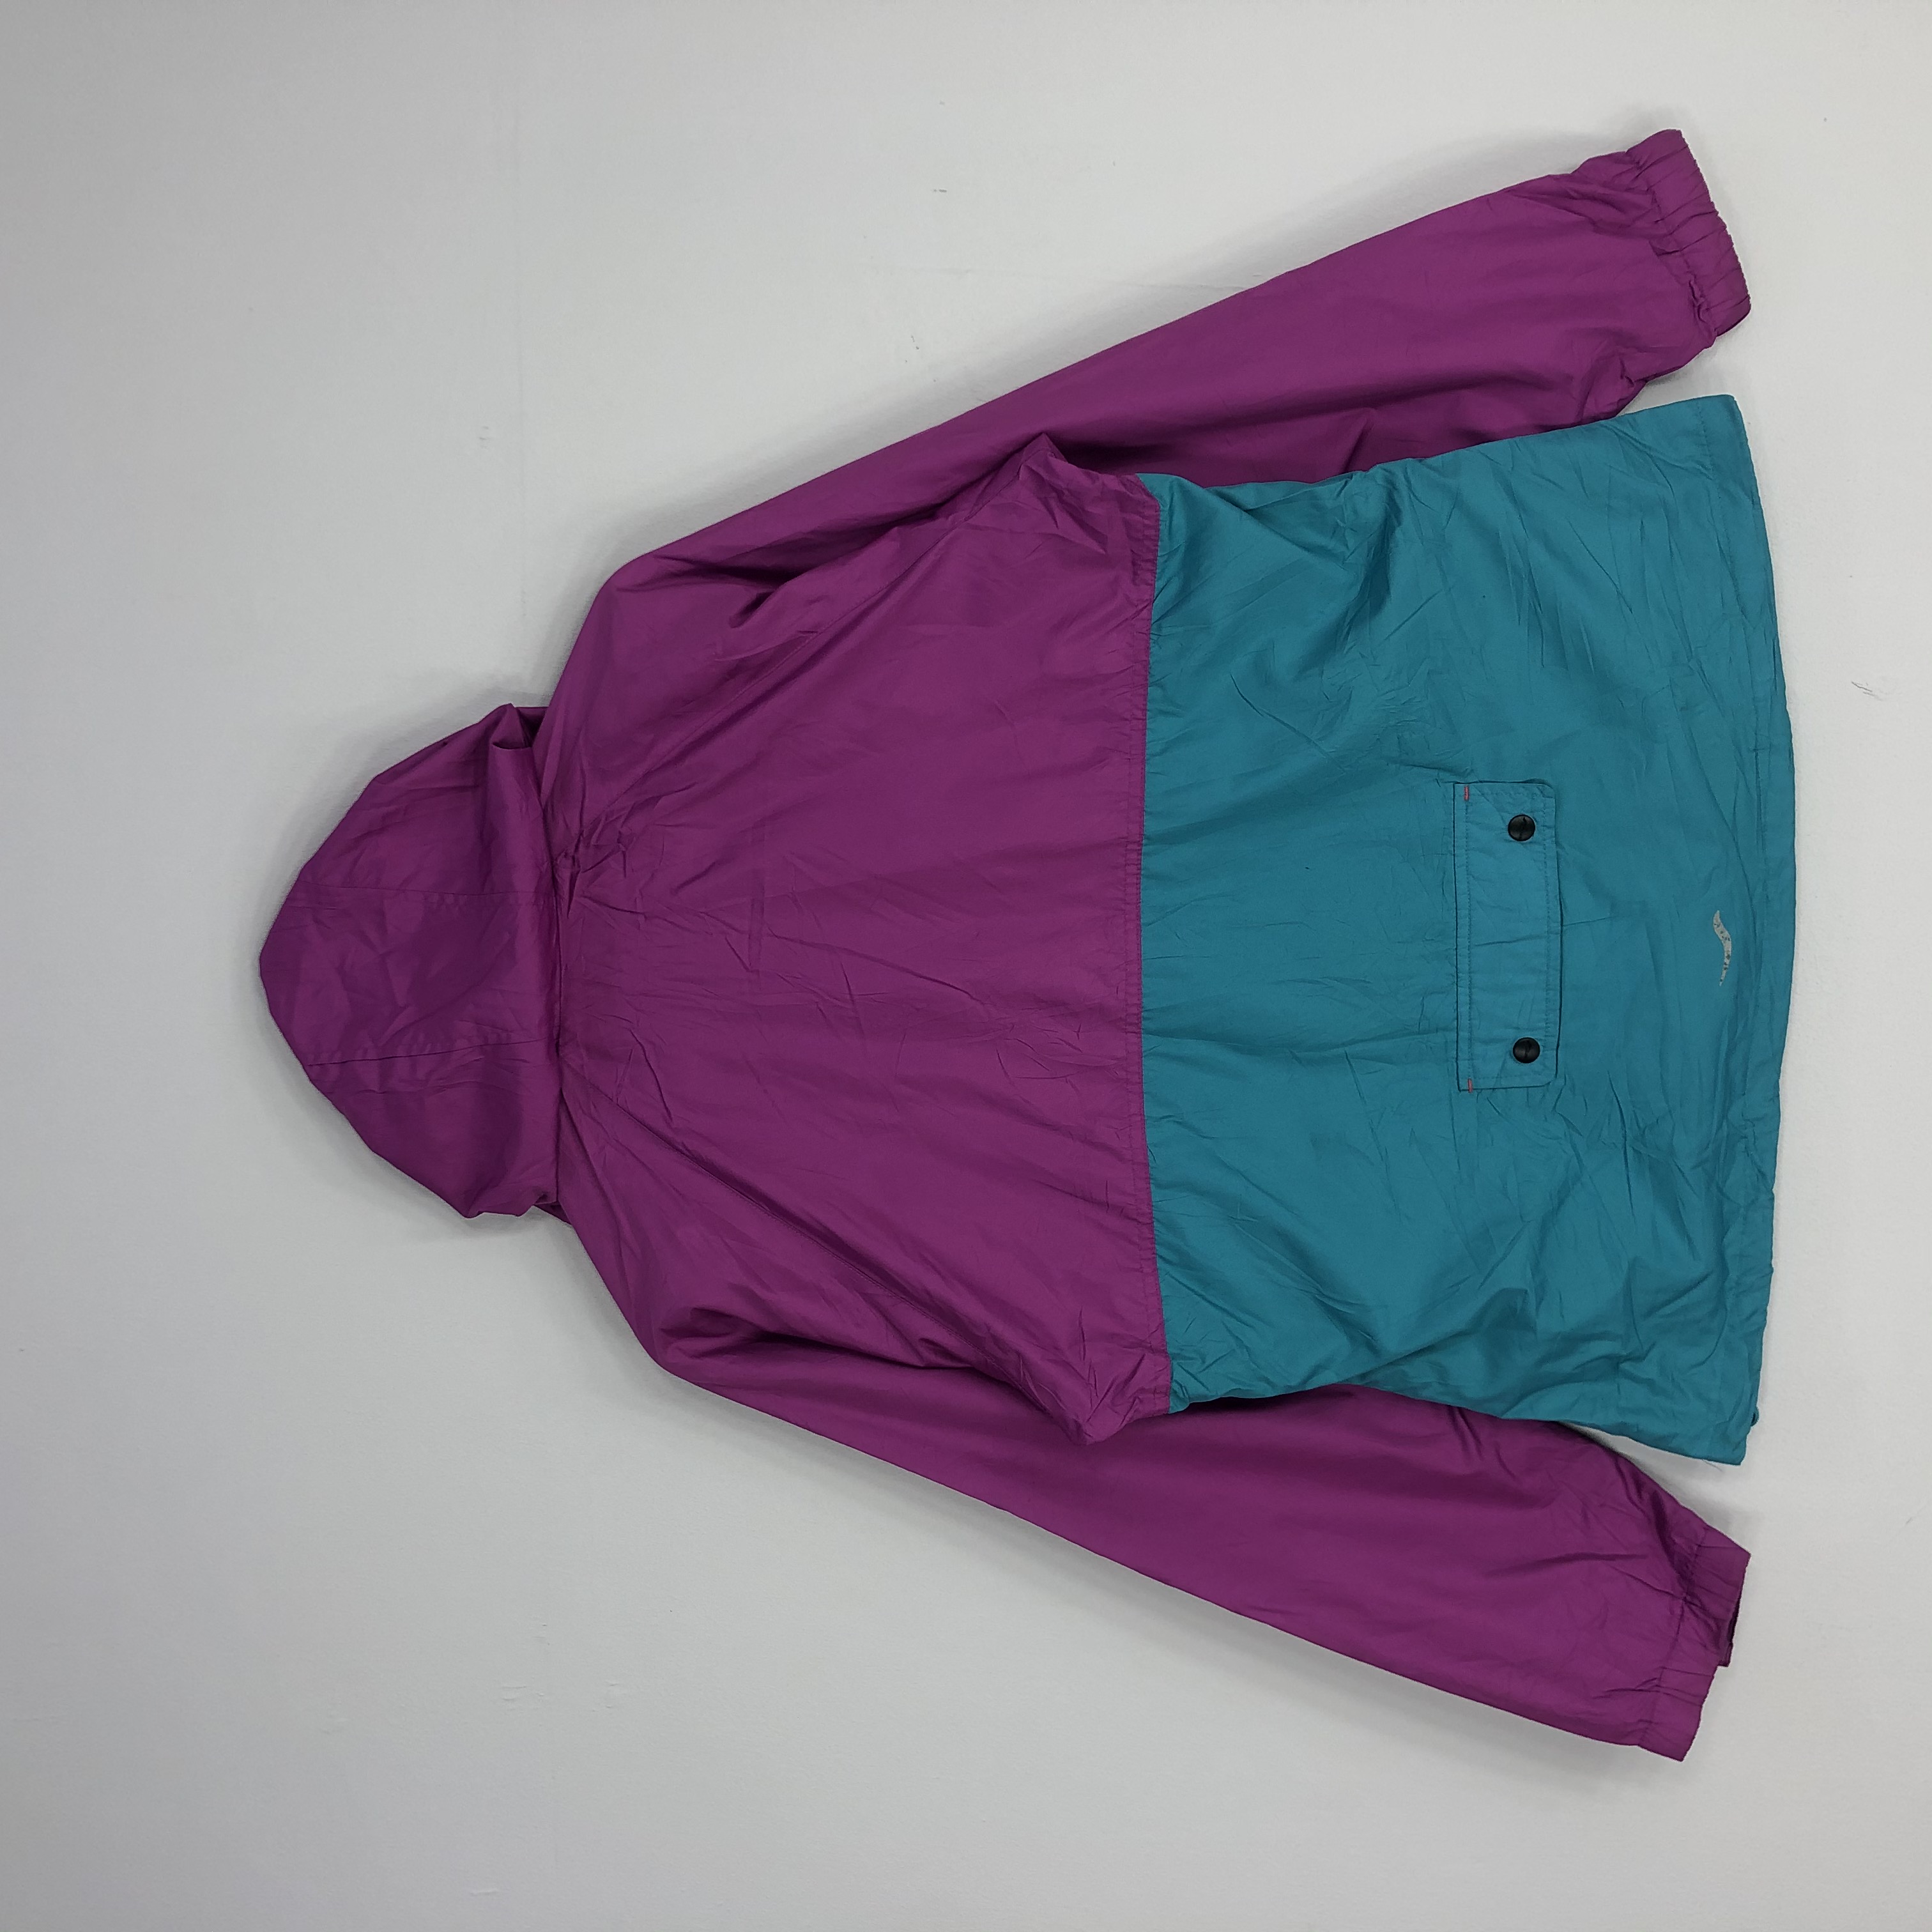 Saucony Zipper Jacket Multicoloured Jacket Large Size - 3